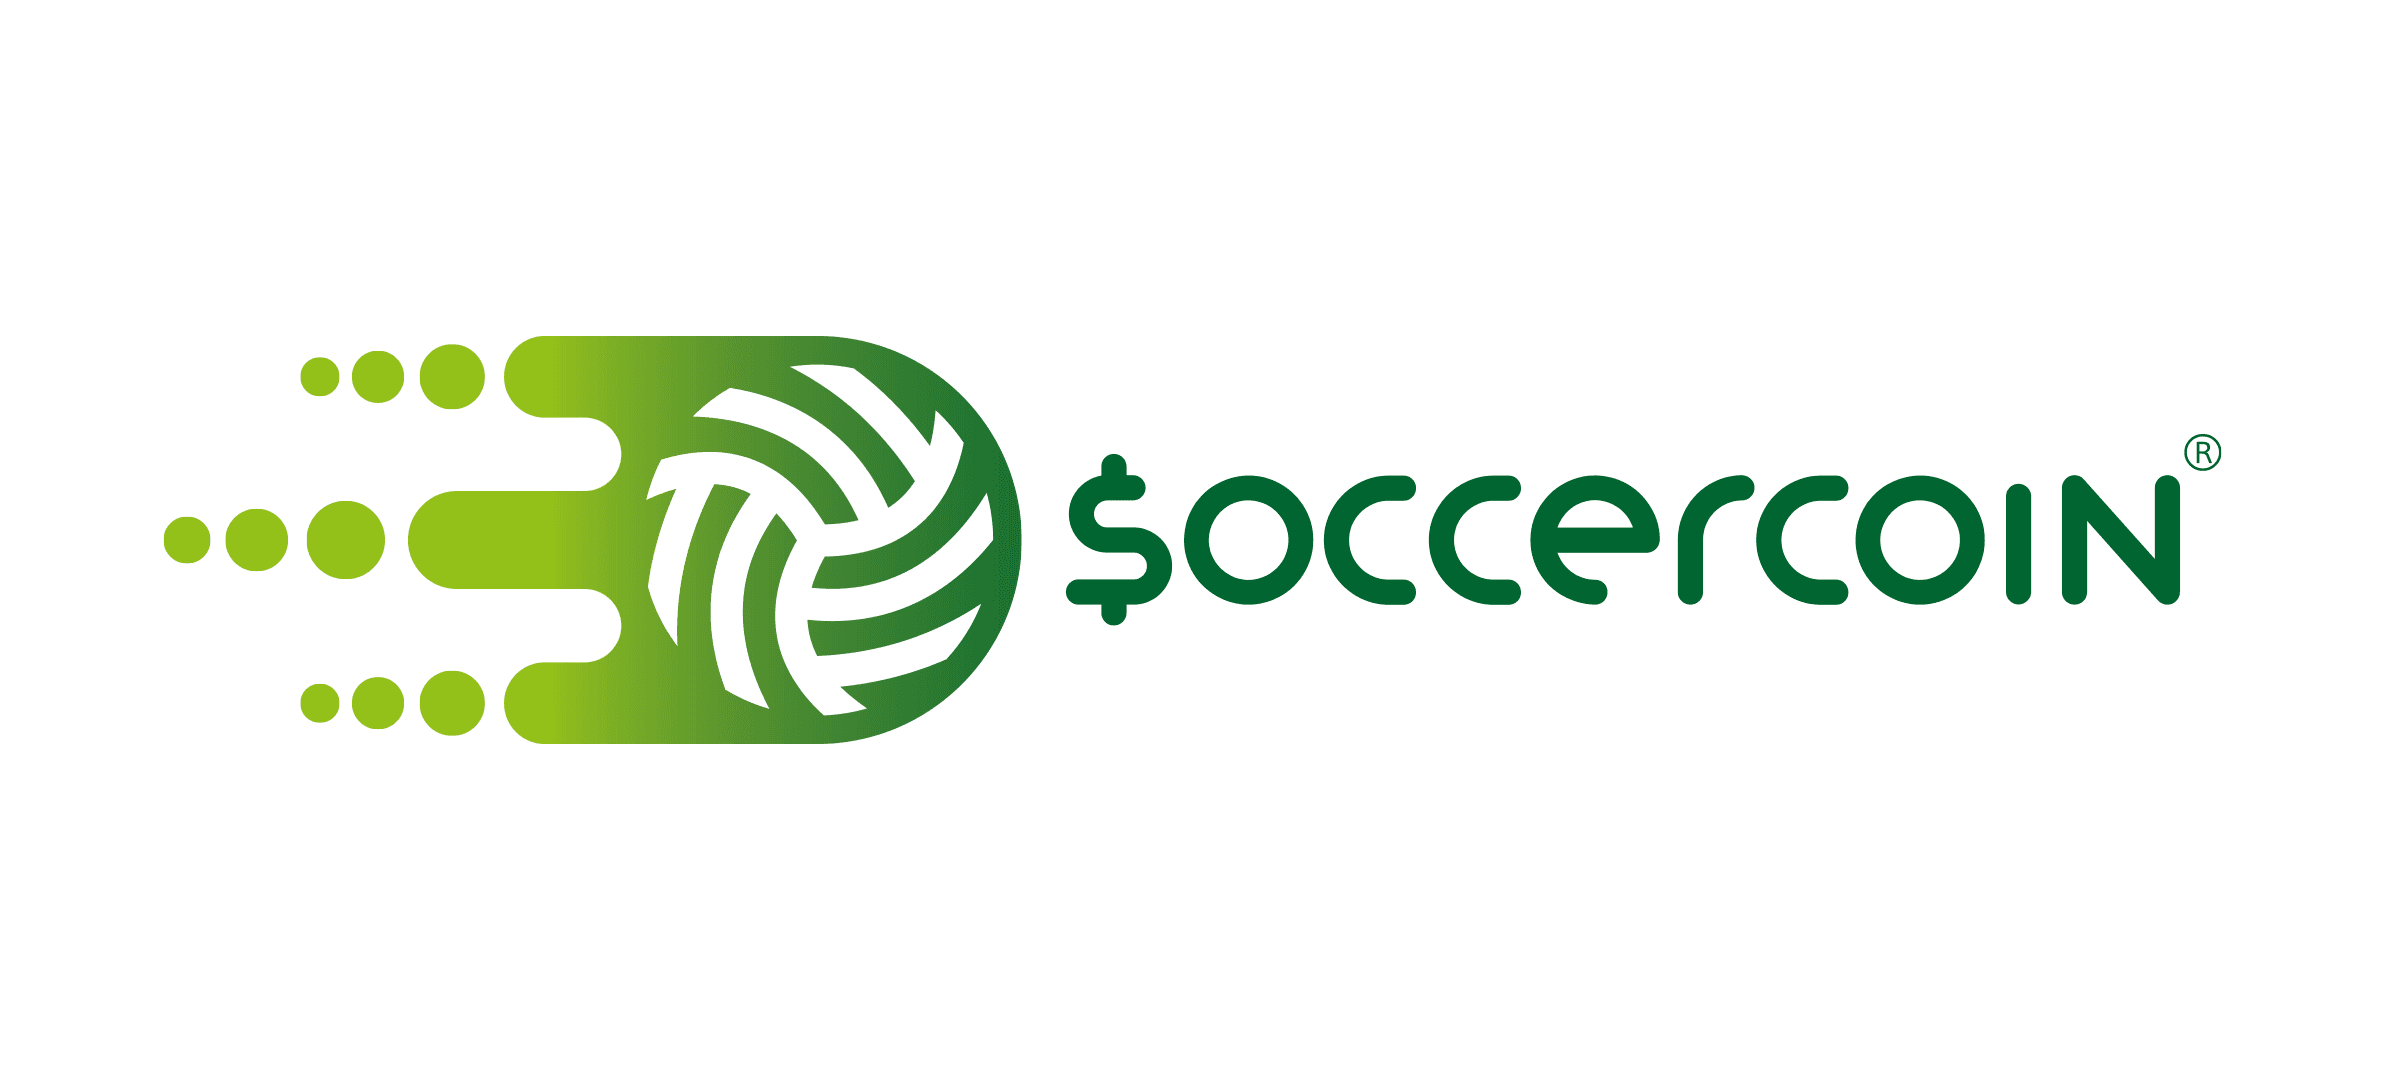 SoccerCoin_NFT 橫幅